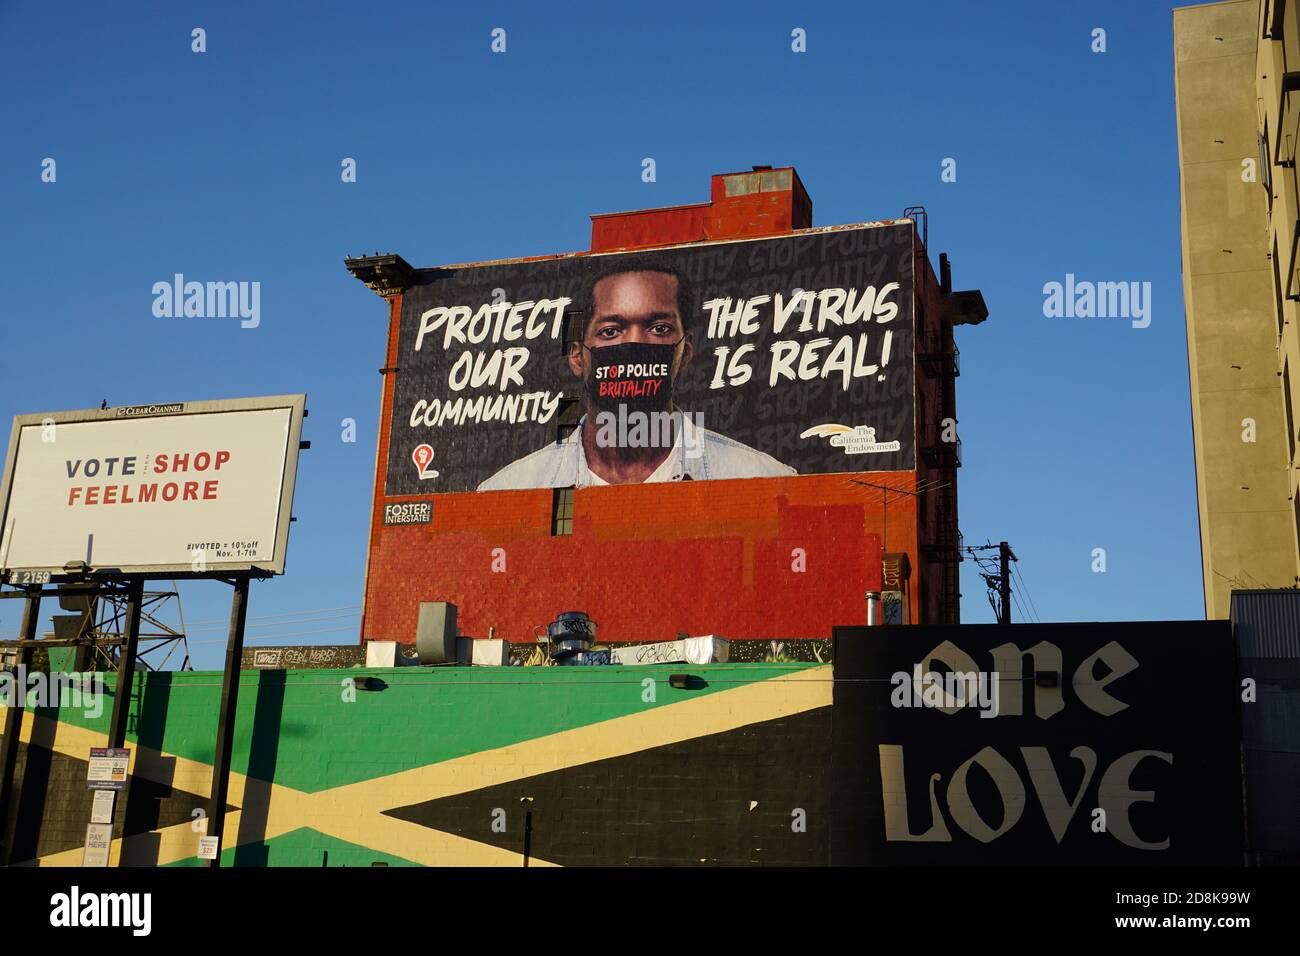 Plakatwände in der Innenstadt von Oakland, CA, USA. Plakatwand für schwarze Gemeinschaft, um covid öffentliches Gesundheitsbewusstsein zu erhöhen. Schwarze Leben Sind Wichtig. Virus ist real. Stockfoto